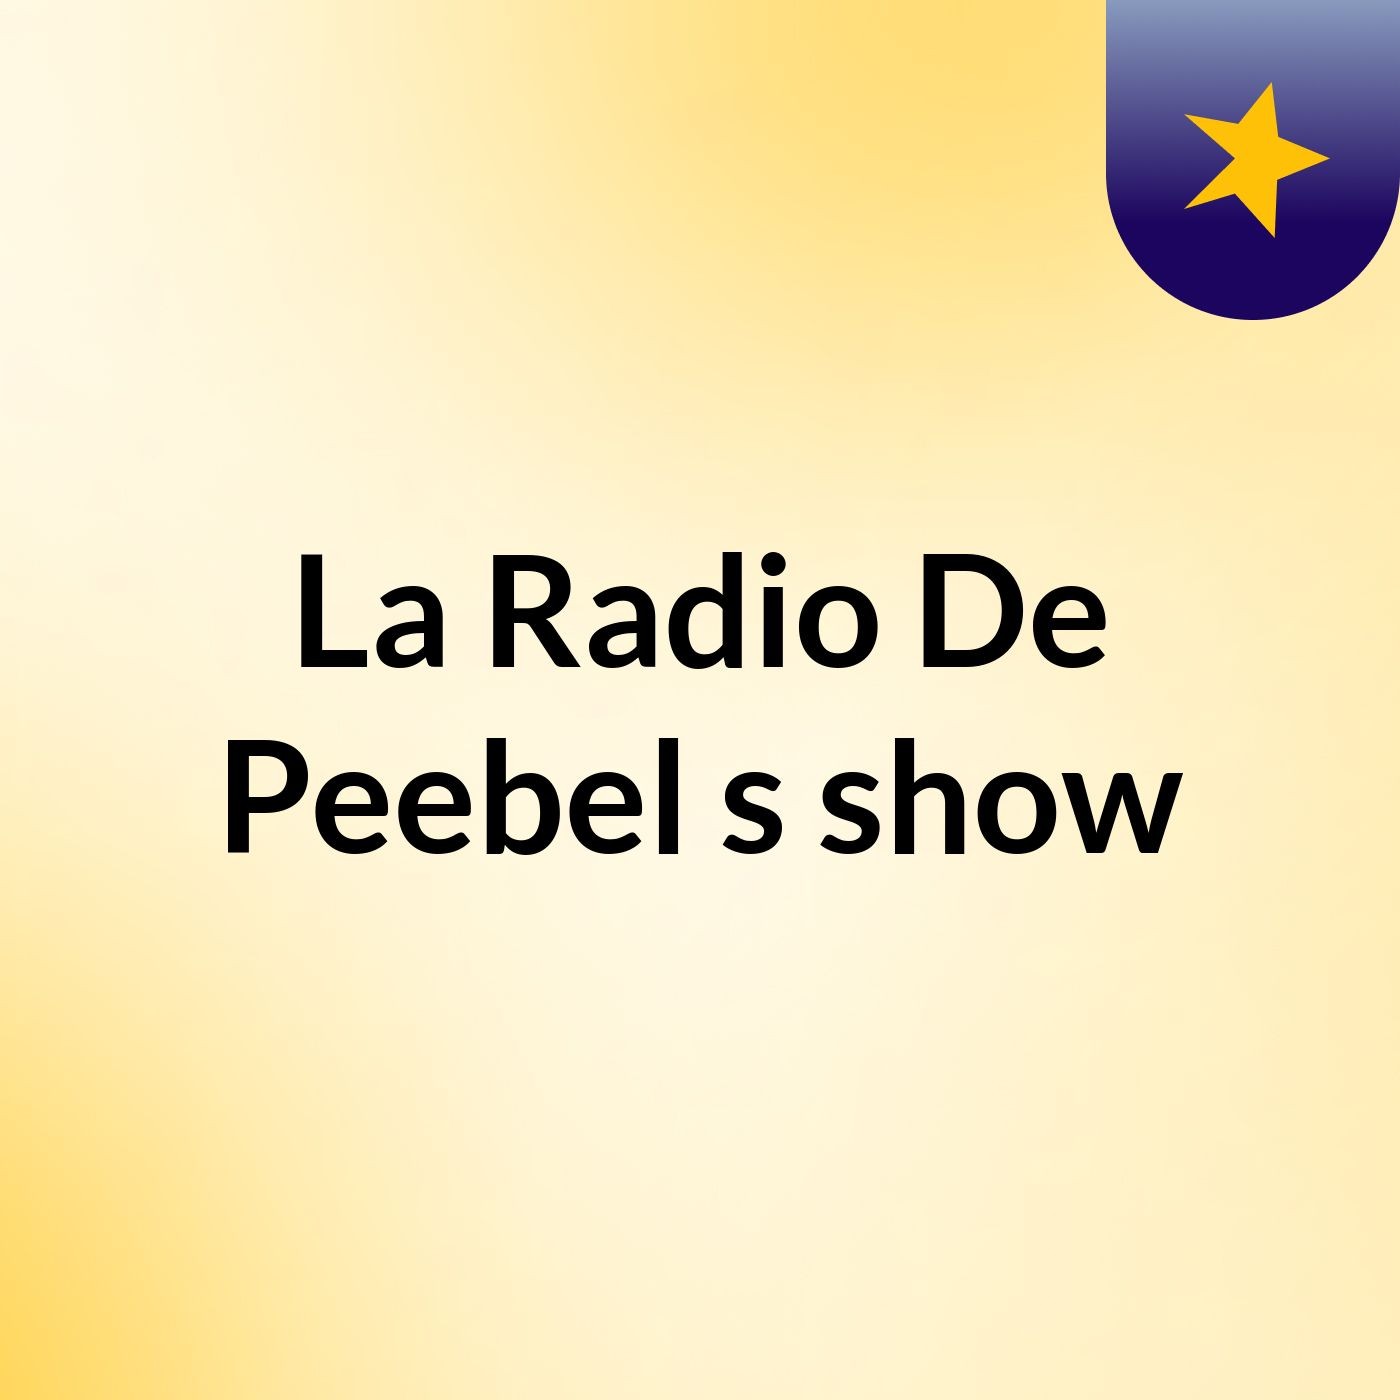 La Radio De Peebel's show